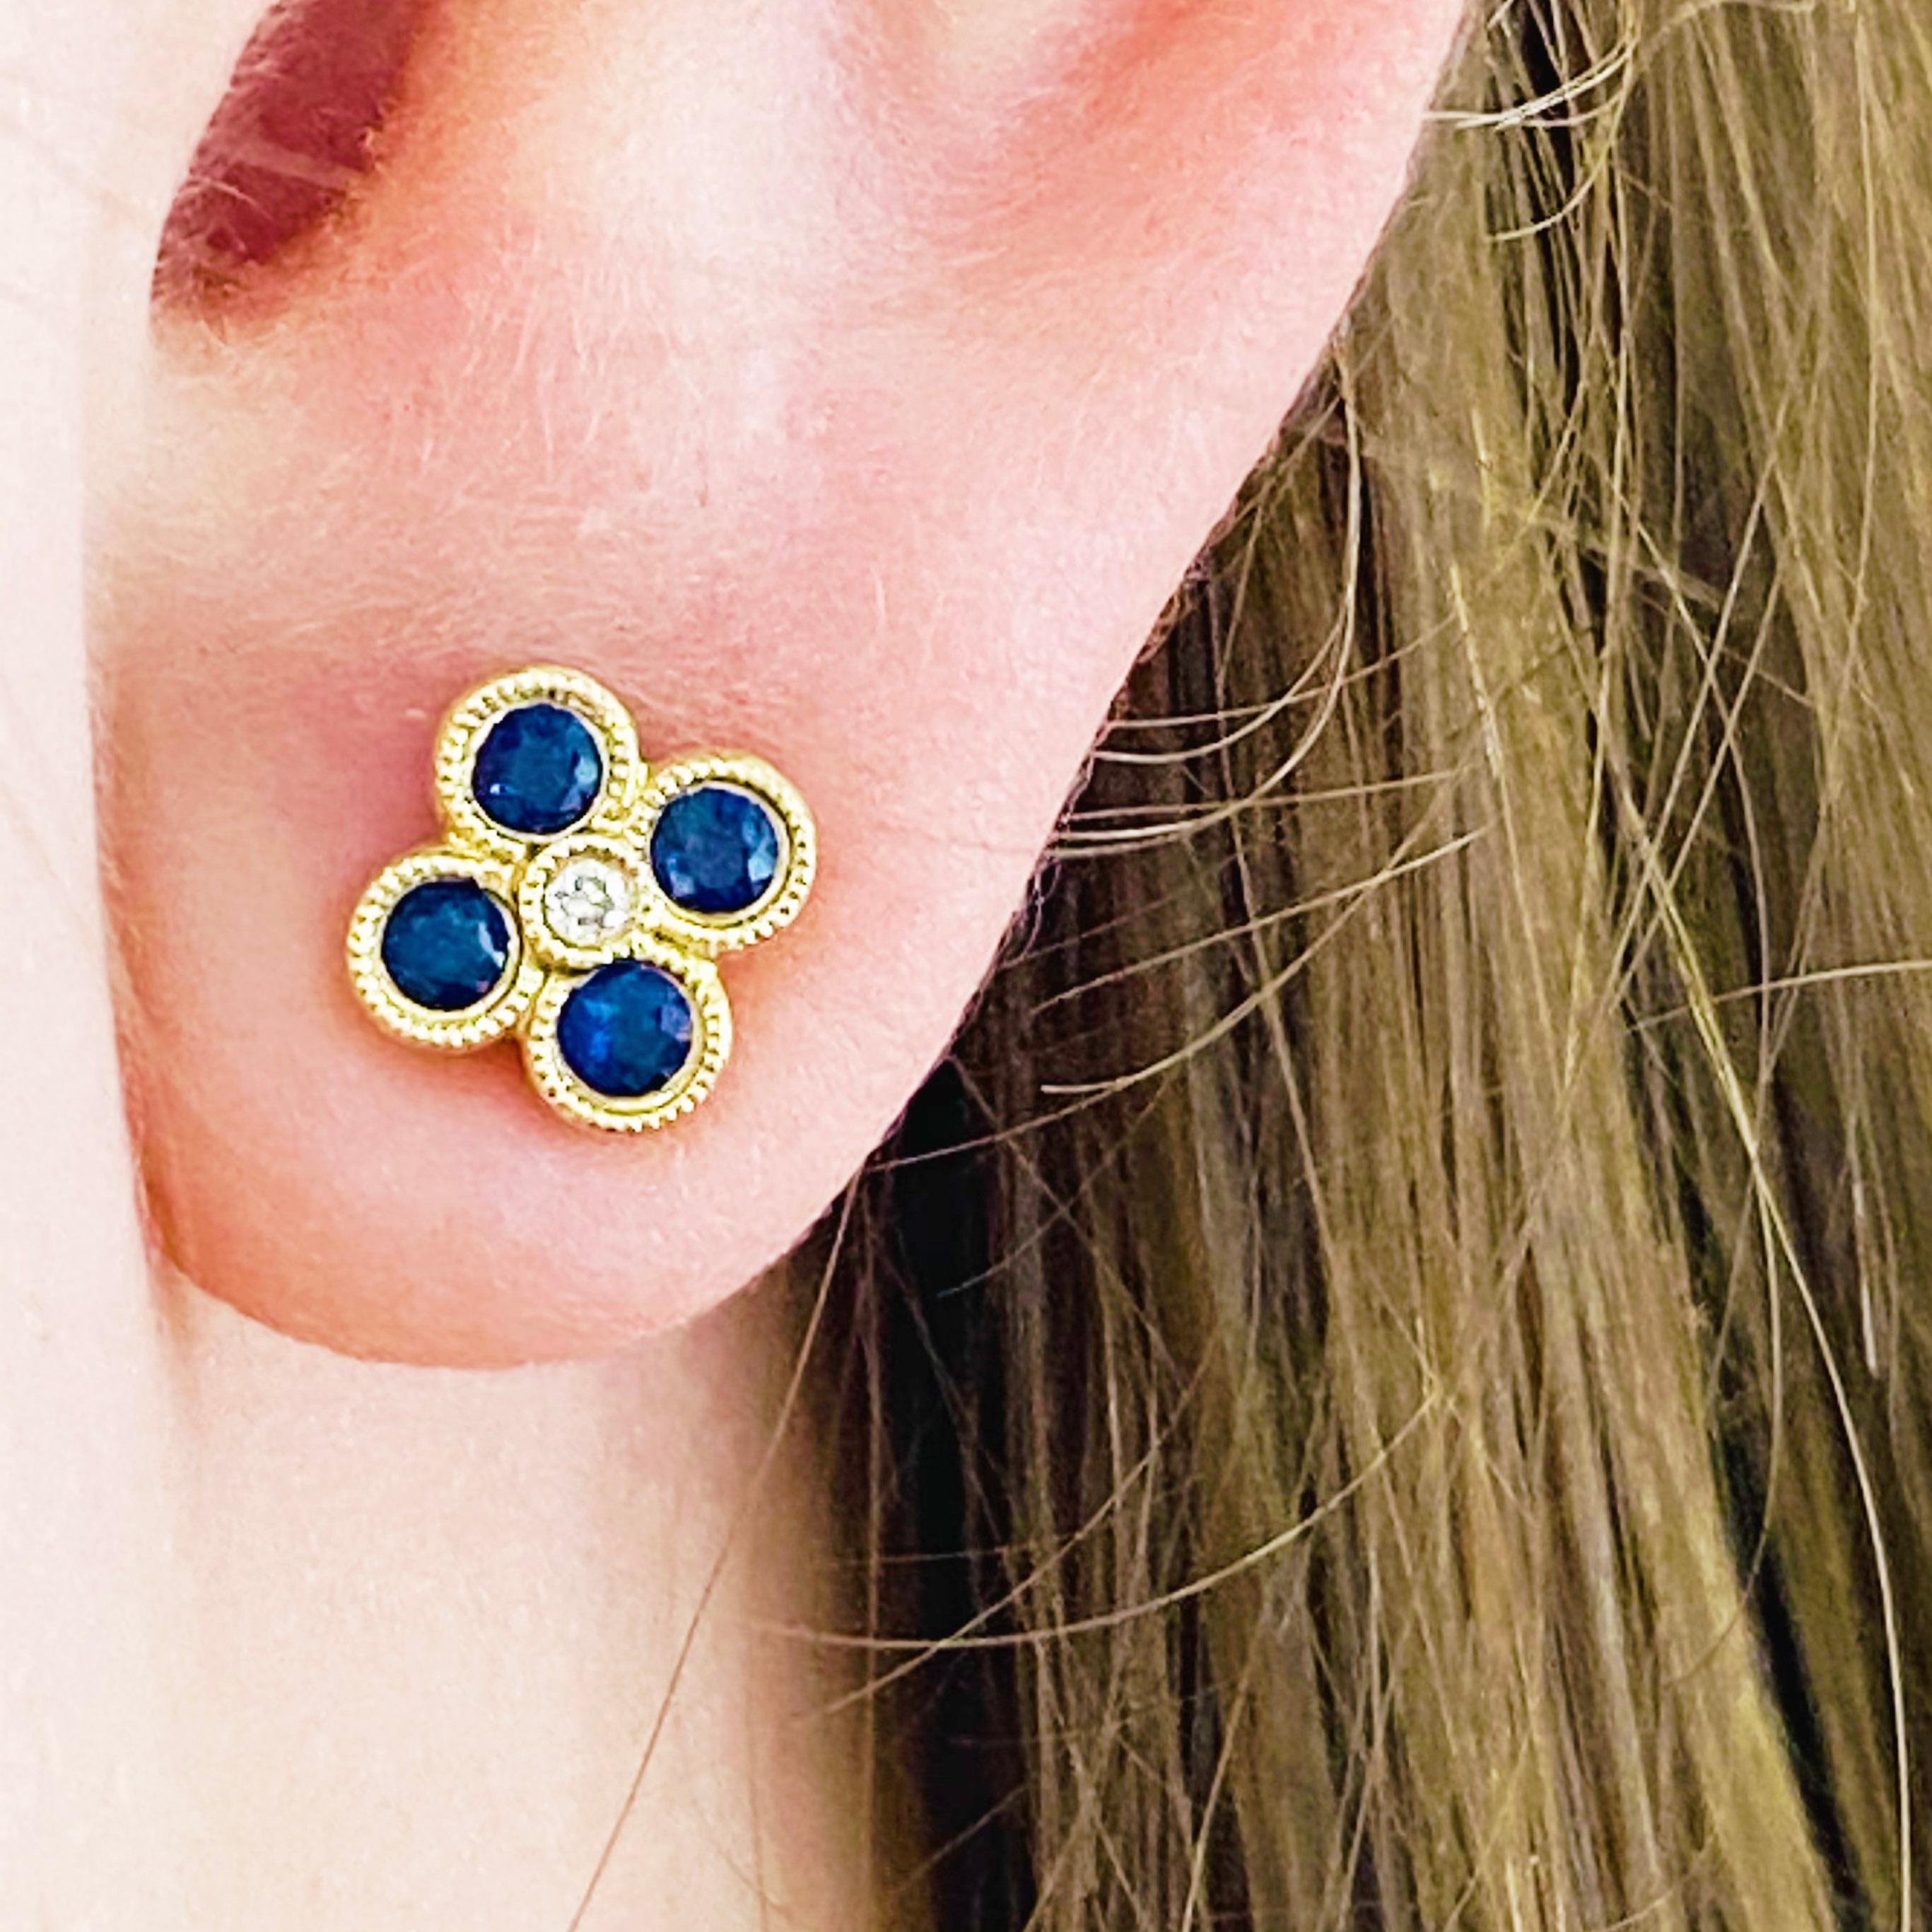 Diese atemberaubenden Ohrstecker aus 14-karätigem Gelbgold mit tiefblauen Saphiren, die mit Diamanten besetzt sind, bieten einen trendigen und zugleich klassischen Look. Diese Ohrringe mit Saphiren und Diamanten sind ein großartiges Accessoire für